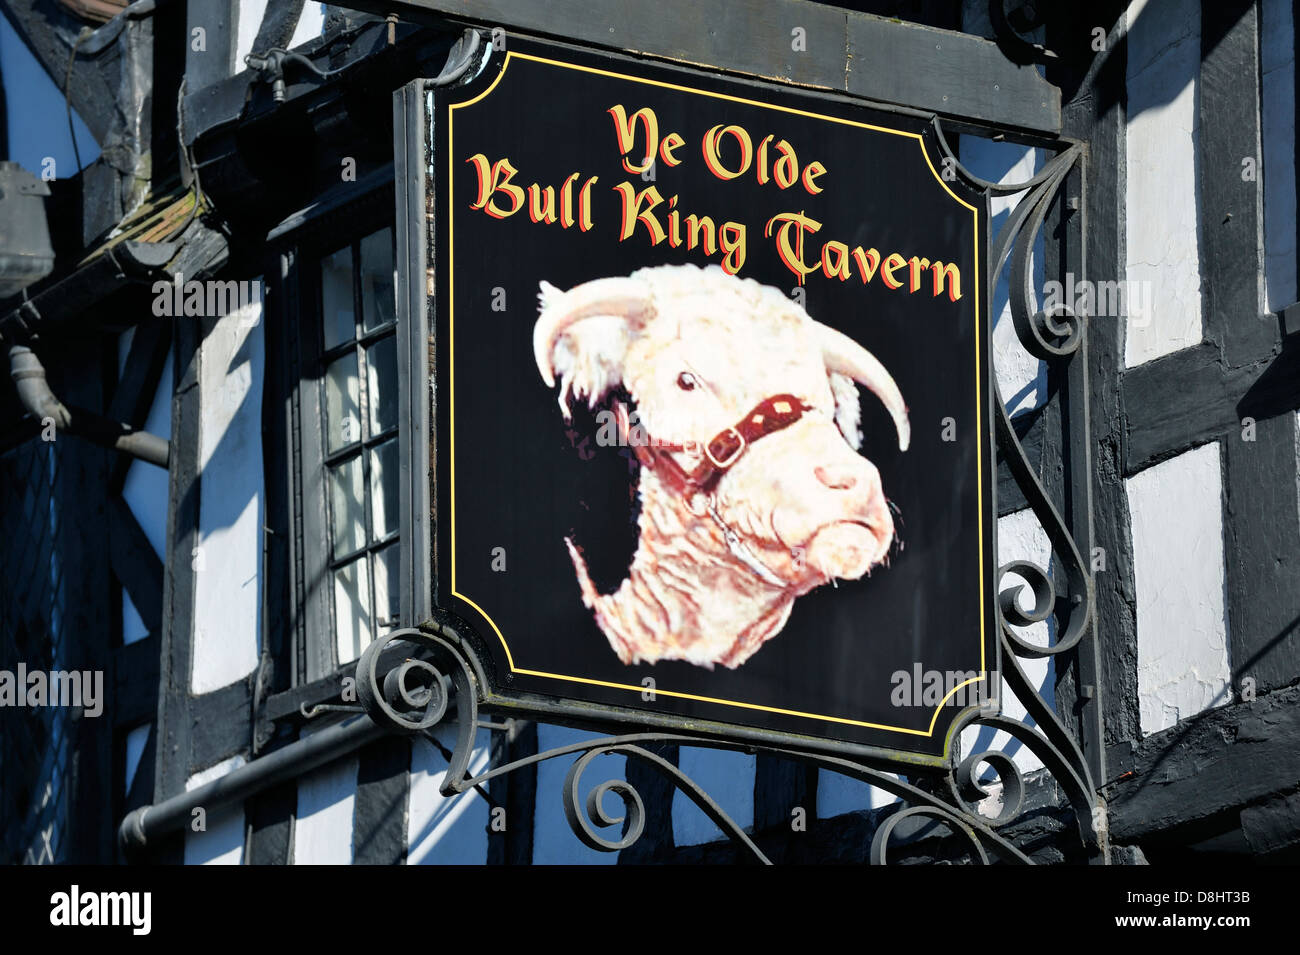 Inn pub sign outside ancient Ye Olde Bull Ring Tavern where King Street joins the Bull Ring. Ludlow, Shropshire, England. Stock Photo